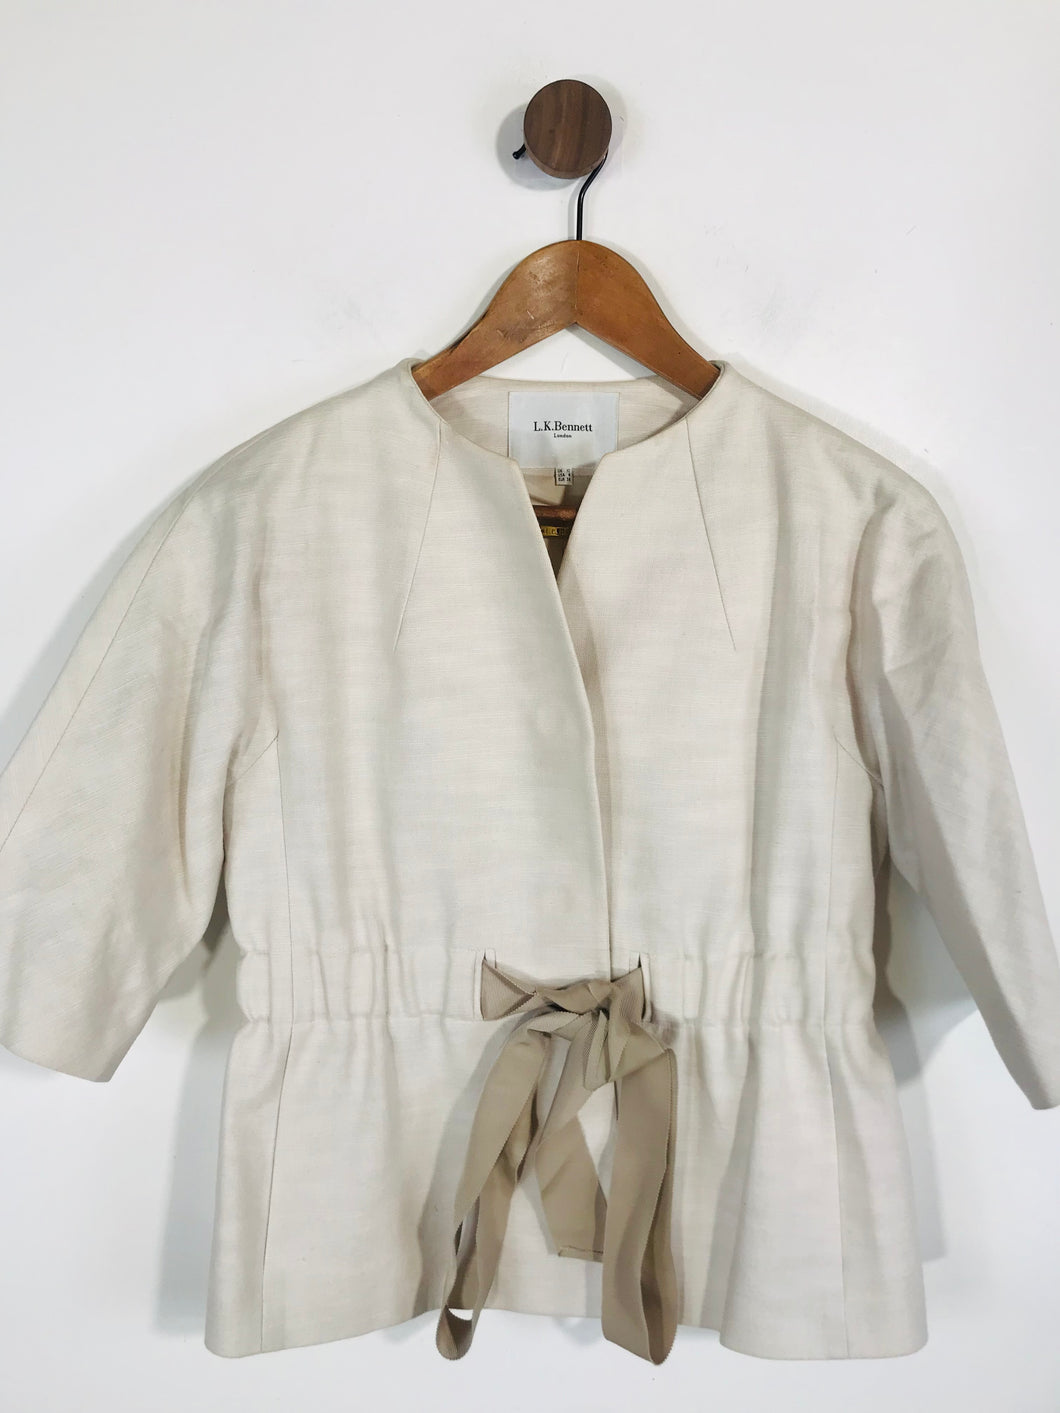 L.K Bennett Women's Linen Blazer Jacket | UK10 | White